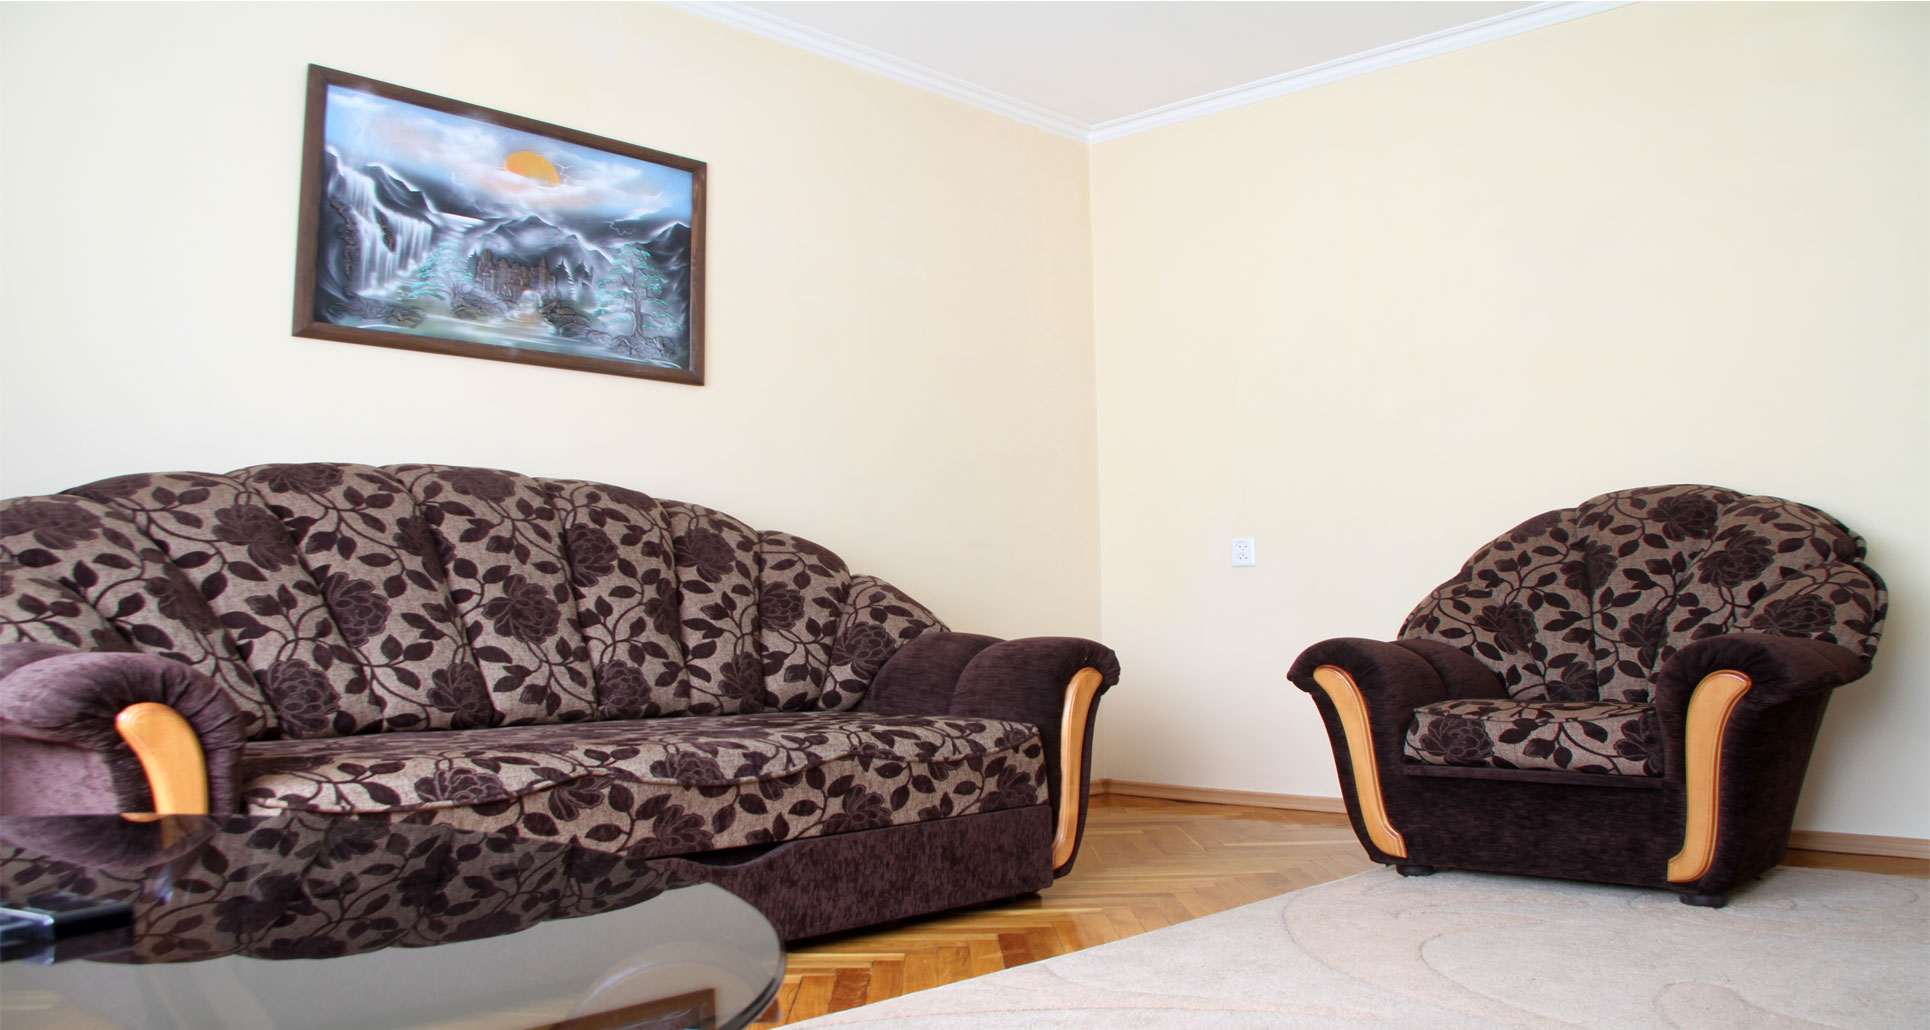 Grand Central Apartment est un appartement de 4 pièces à louer à Chisinau, Moldova